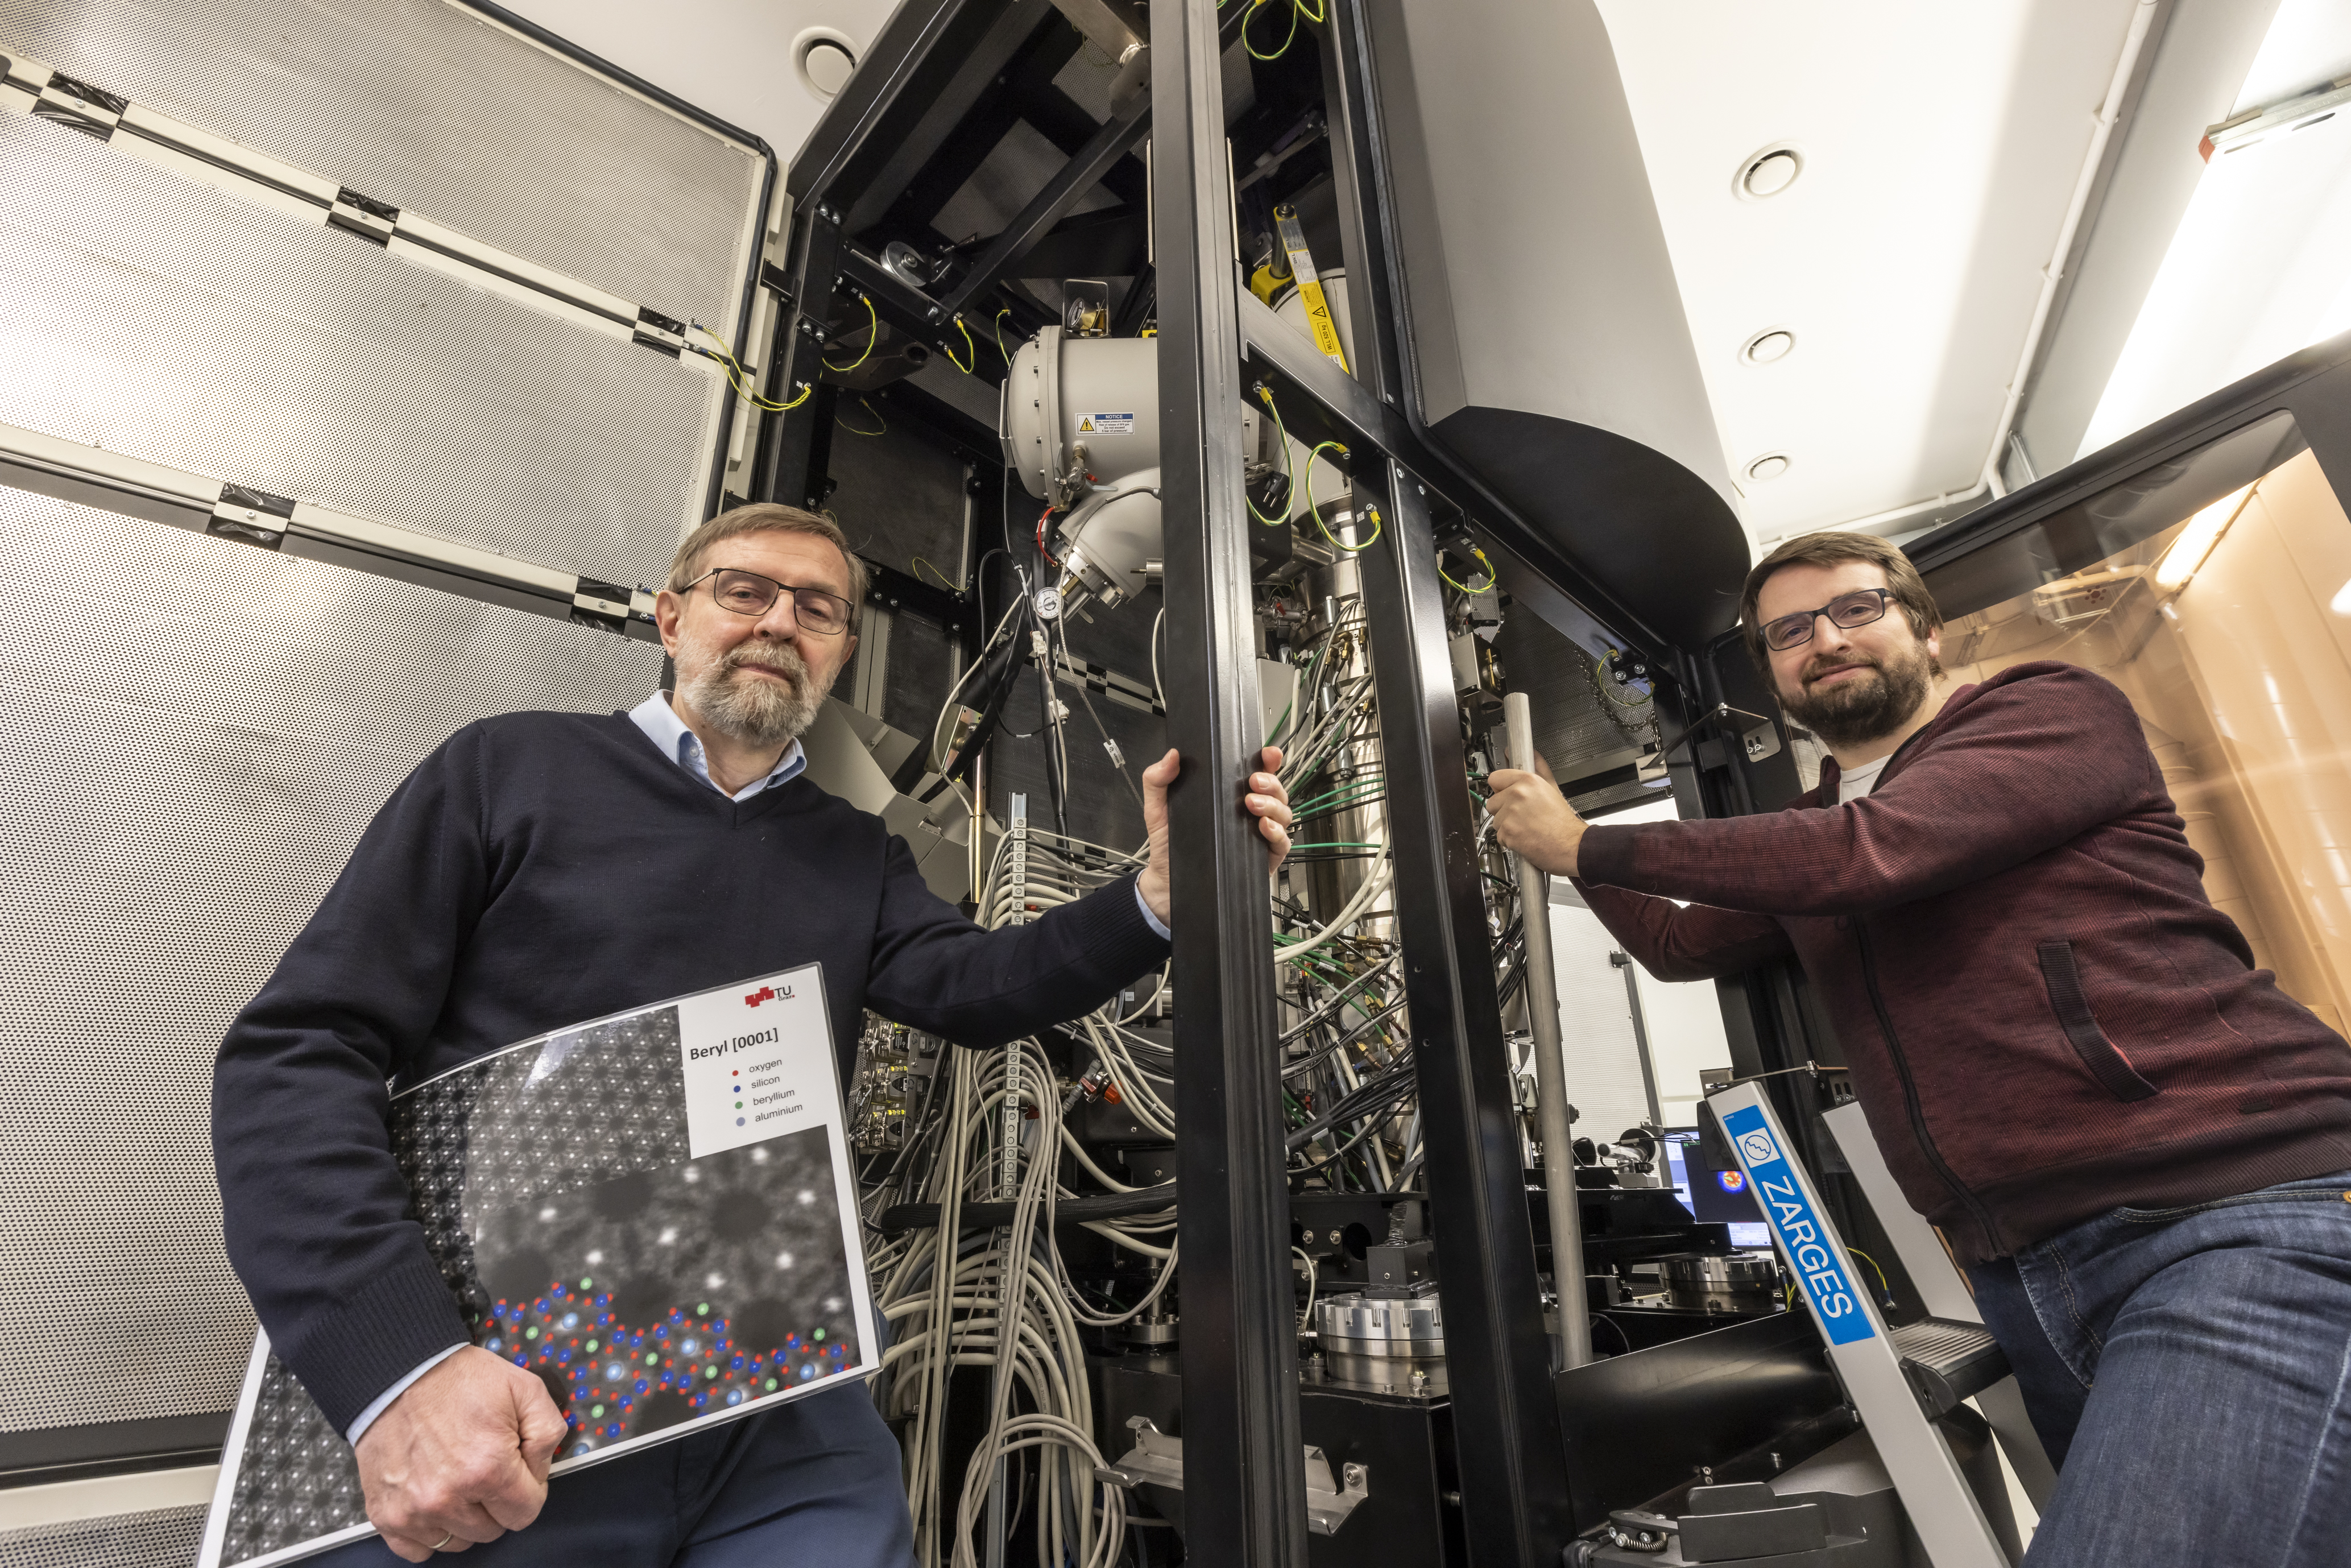 Zwei Männer stehen neben einer Maschine, in deren Inneren viele Kabel zu sehen sind.